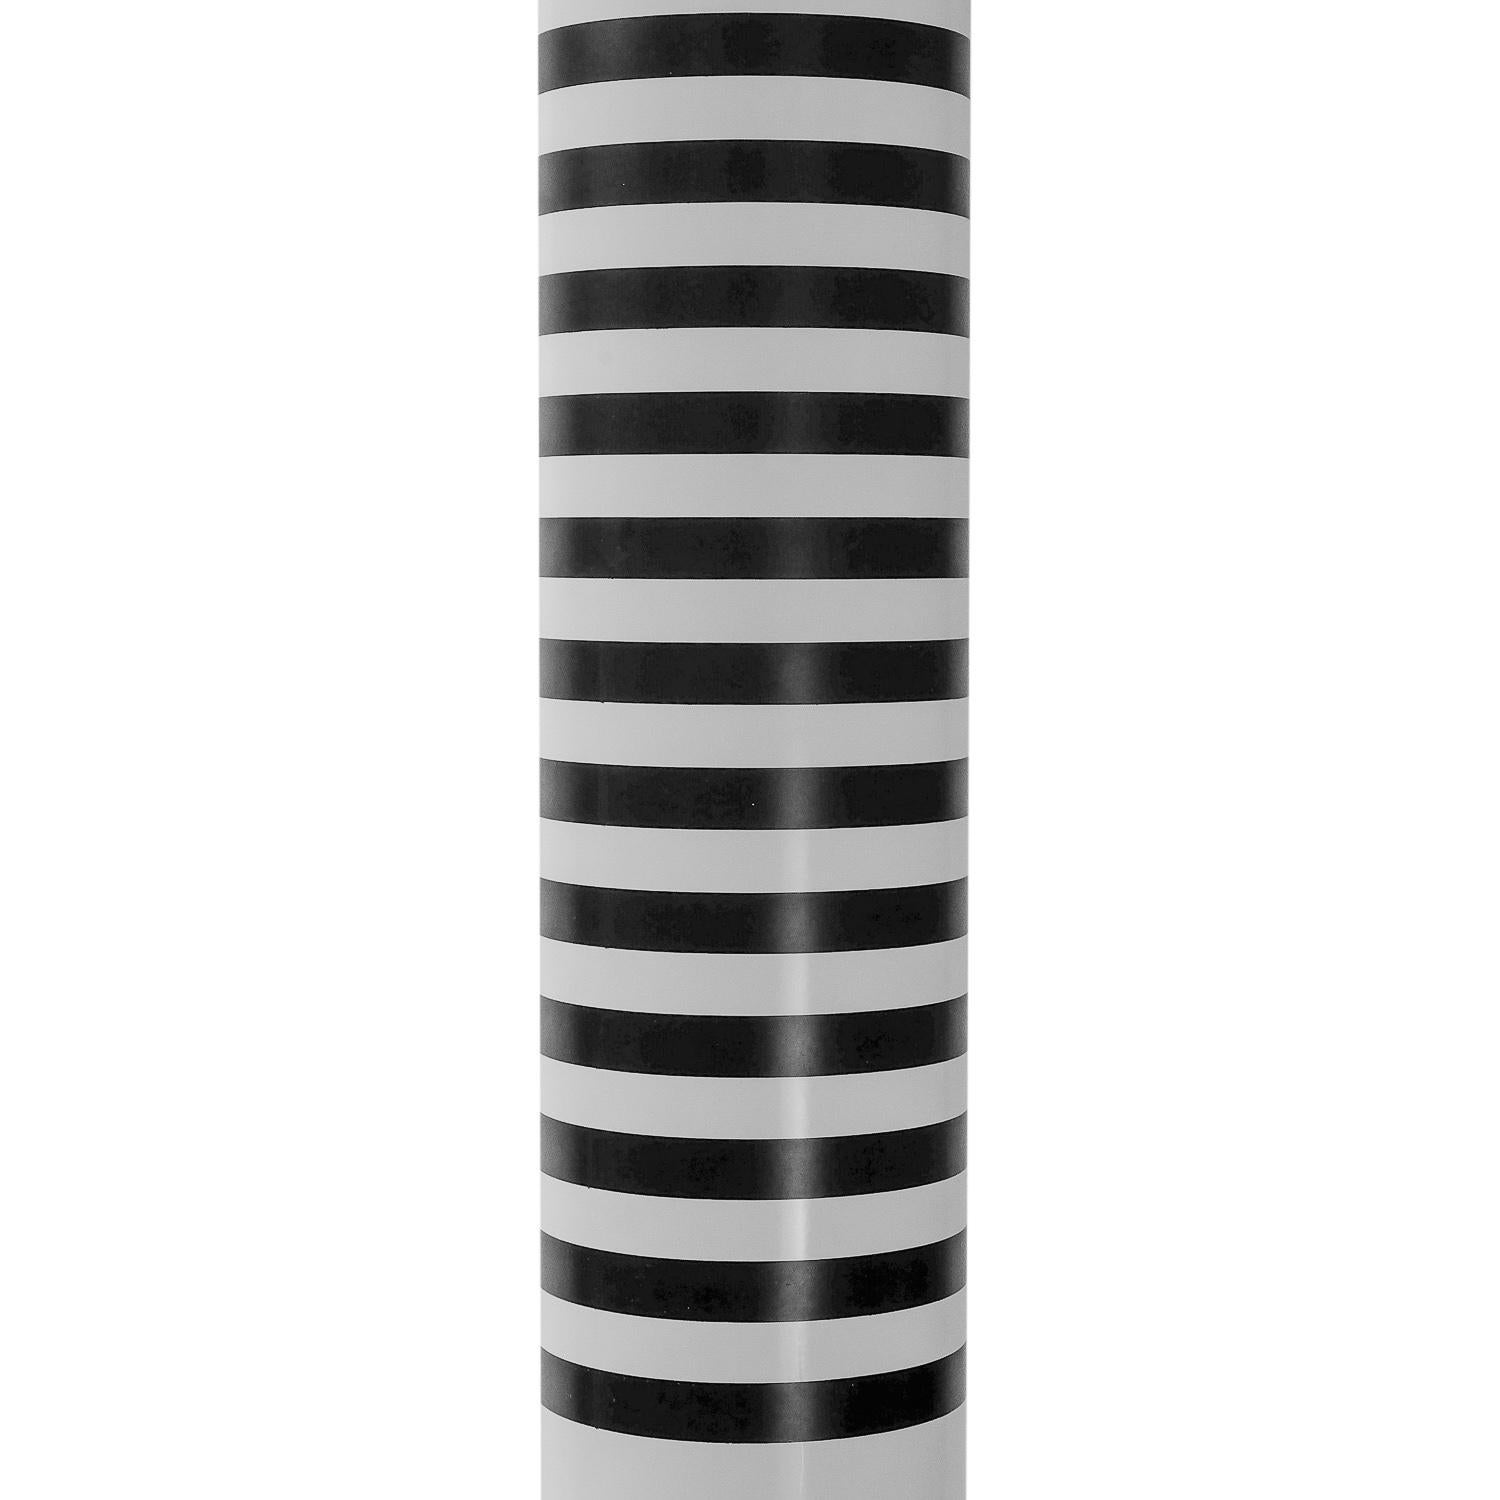 Lampadaire vintage Artemide, modèle Shogun Terra - un design de l'architecte Mario Botta (1985).

Cette lampe impressionnante est un modèle typique du mouvement Memphis-Milano. Cependant, seule la lampe de table est actuellement en vente, cette